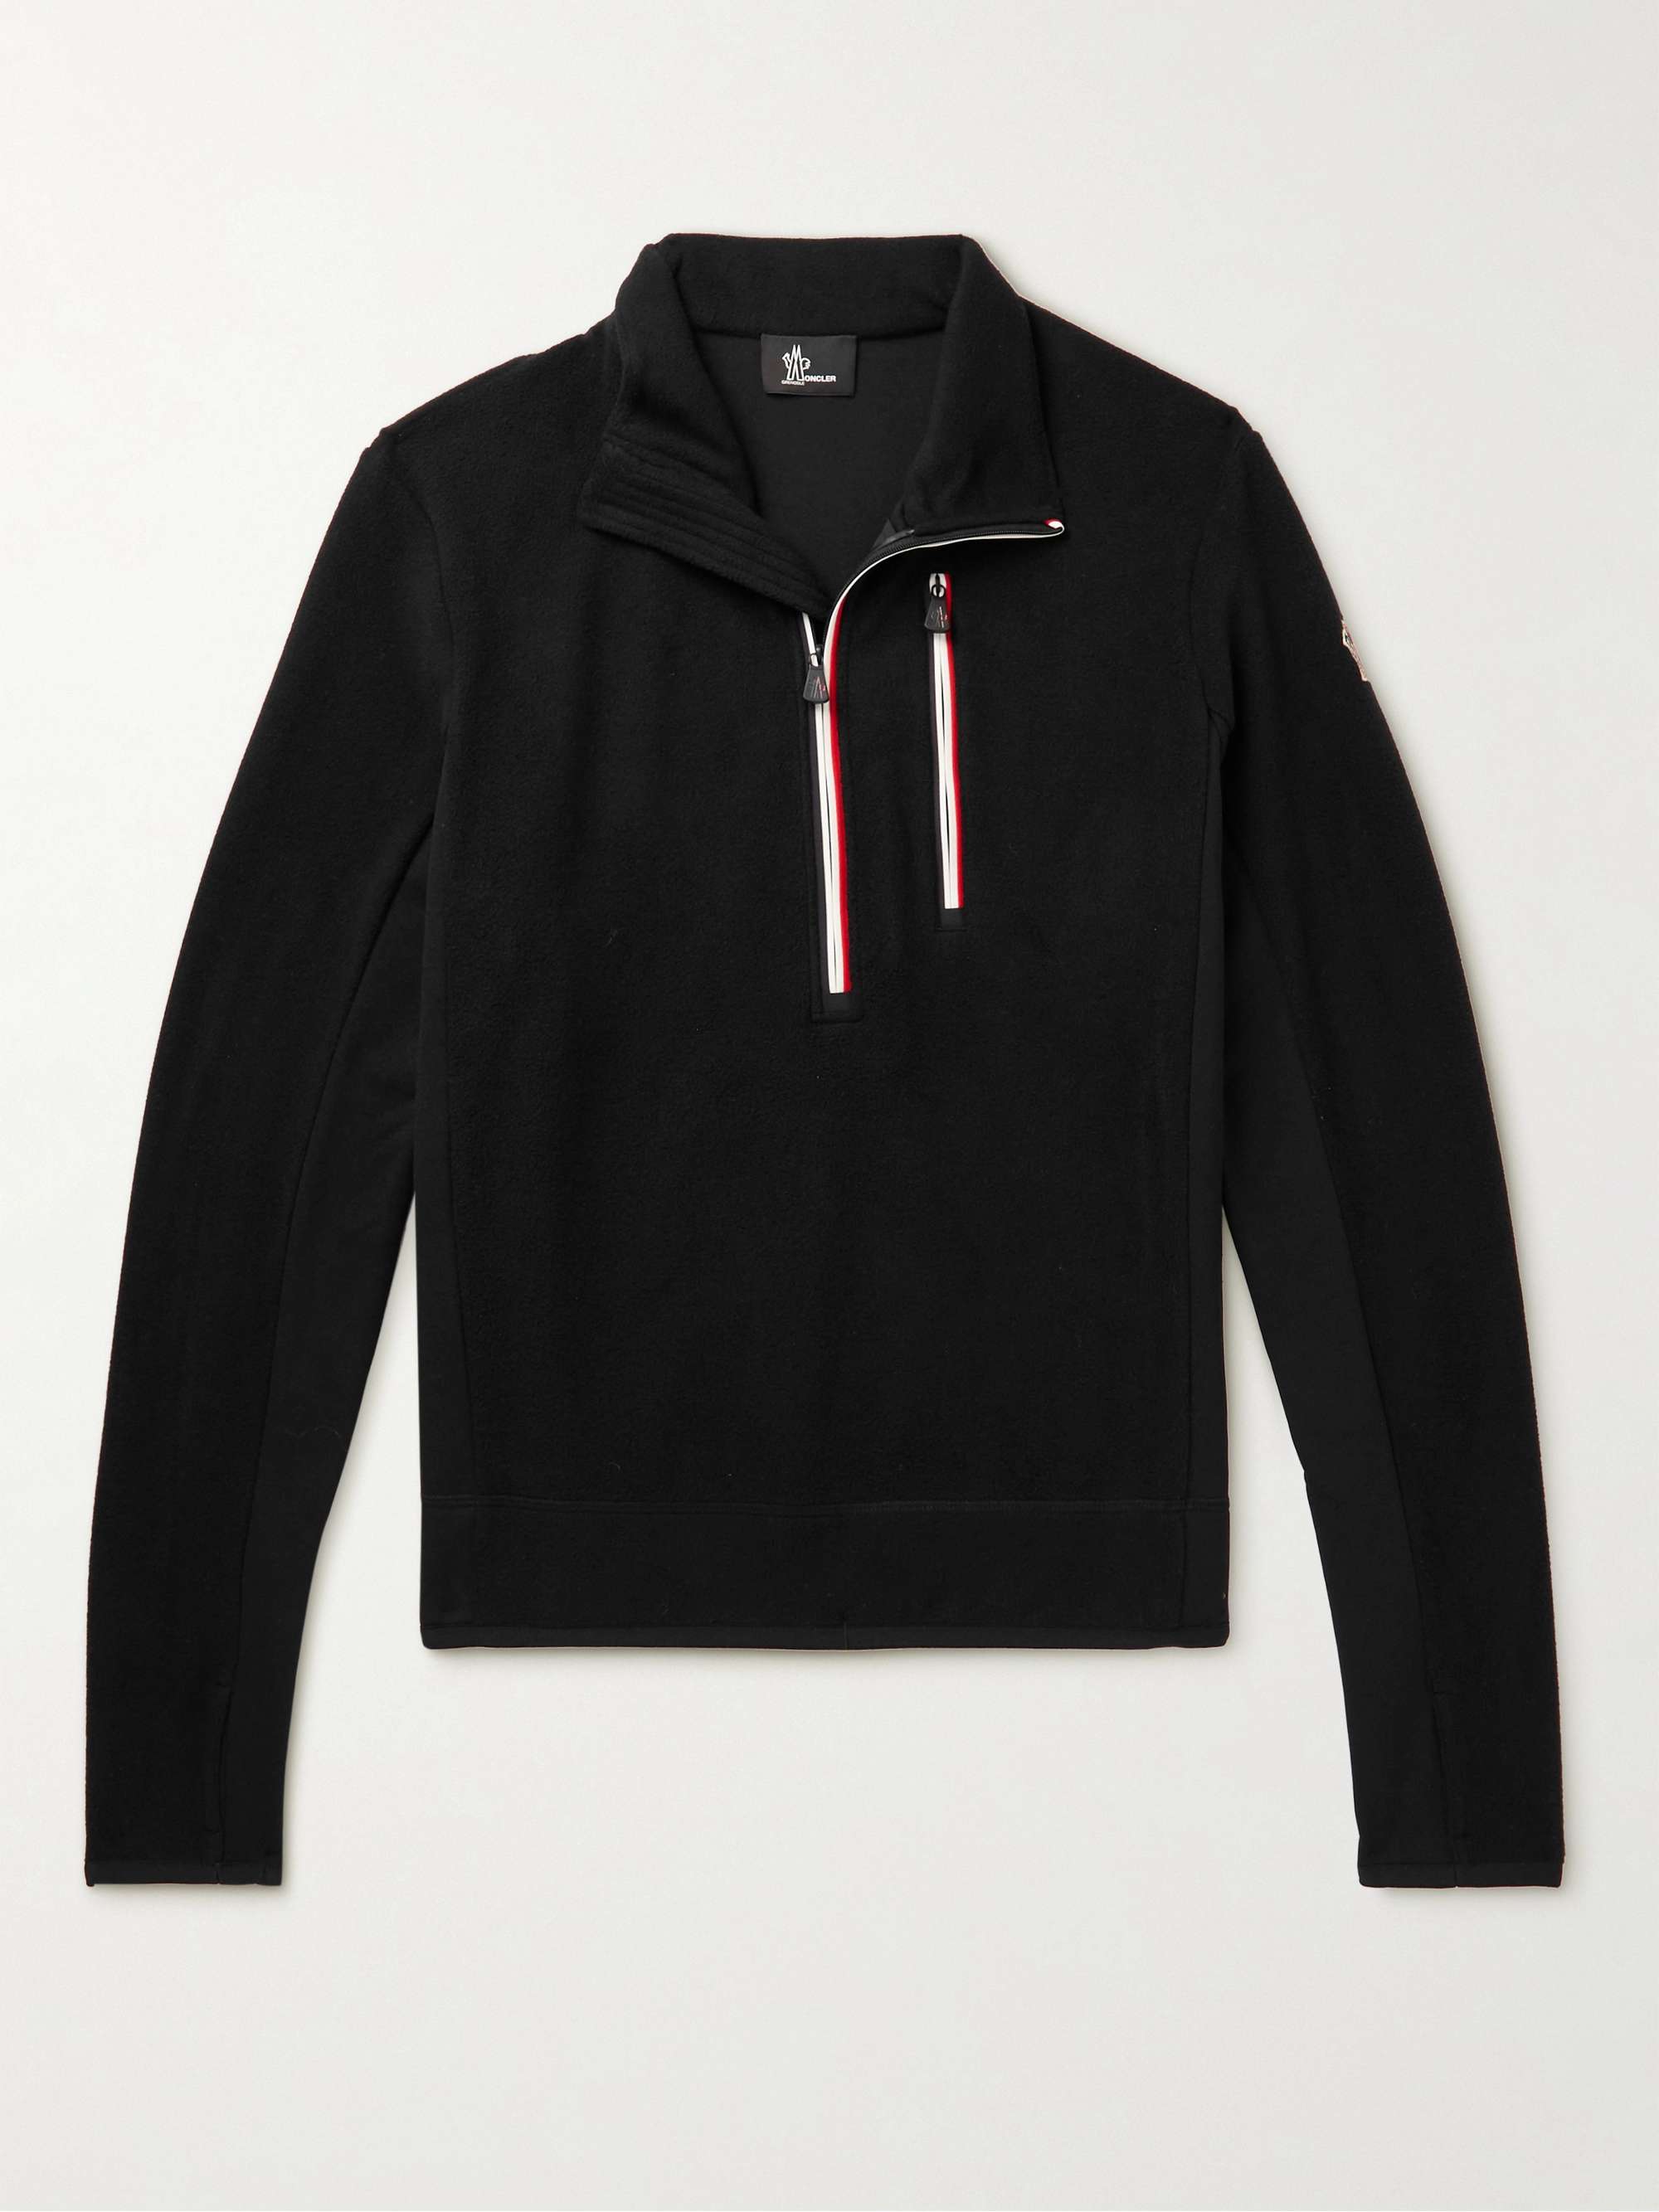 MONCLER GRENOBLE Fleece Half-Zip Sweatshirt for Men | MR PORTER